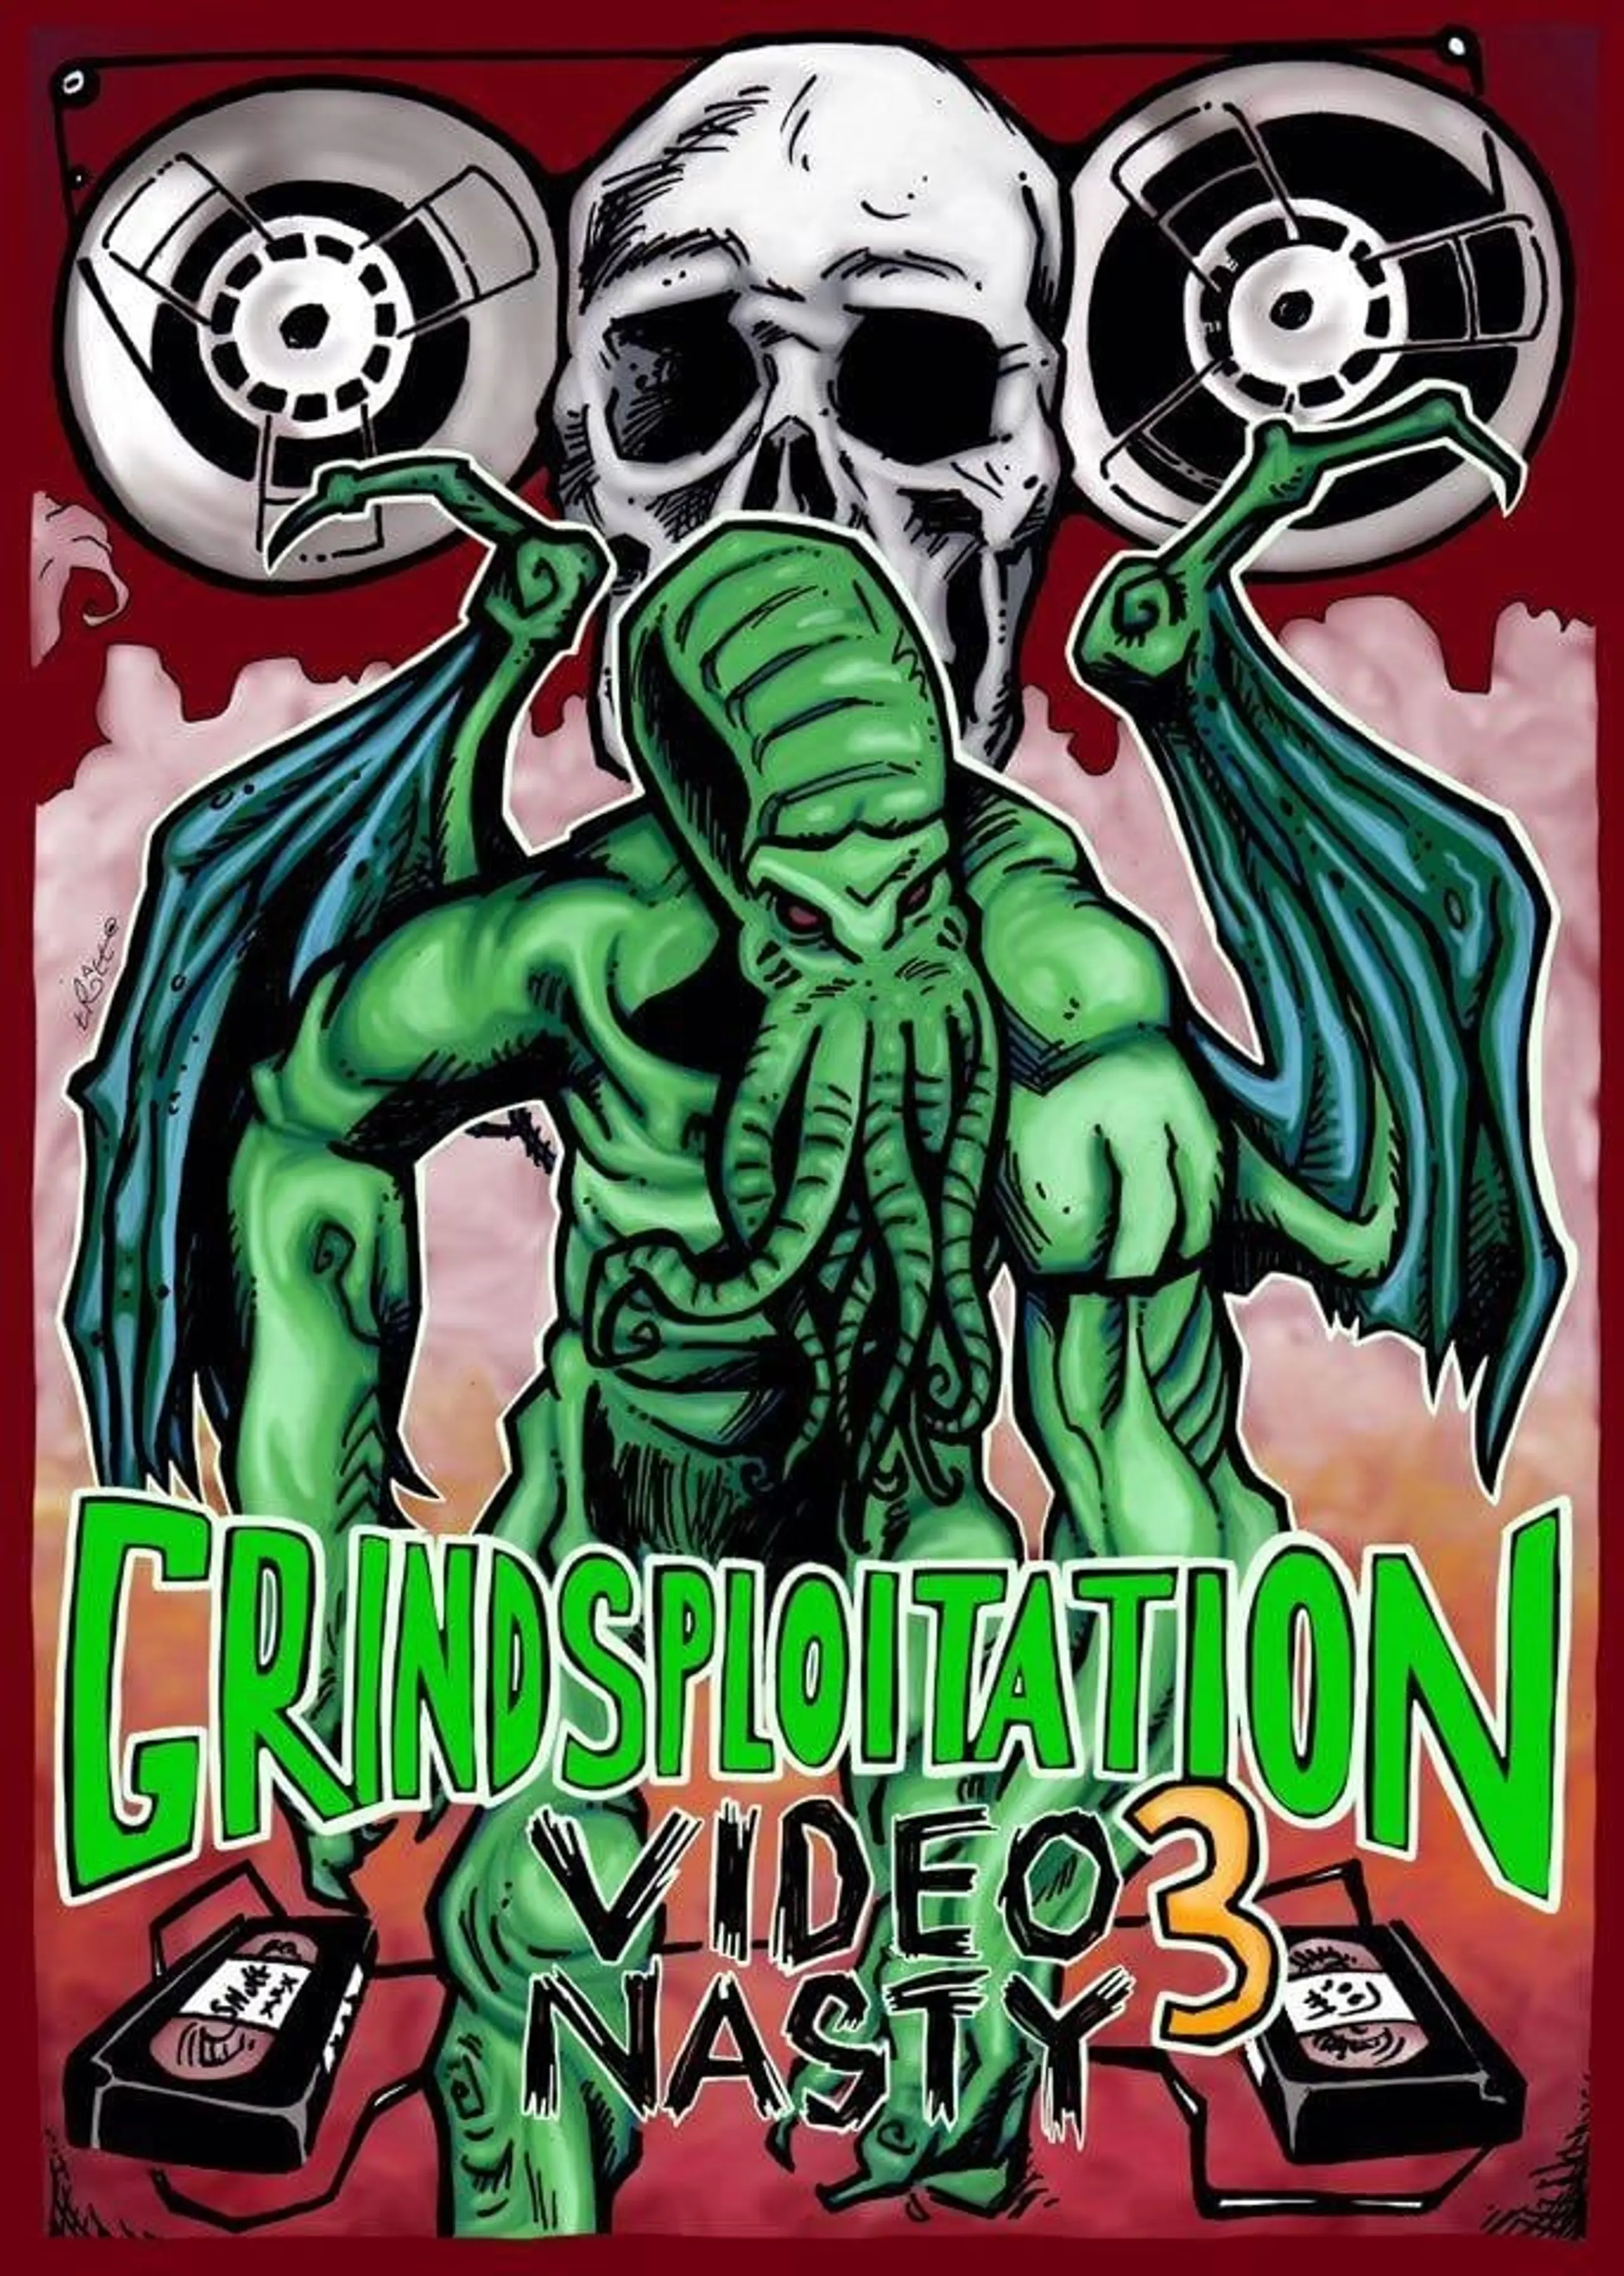 Grindsploitation 3: Video Nasty